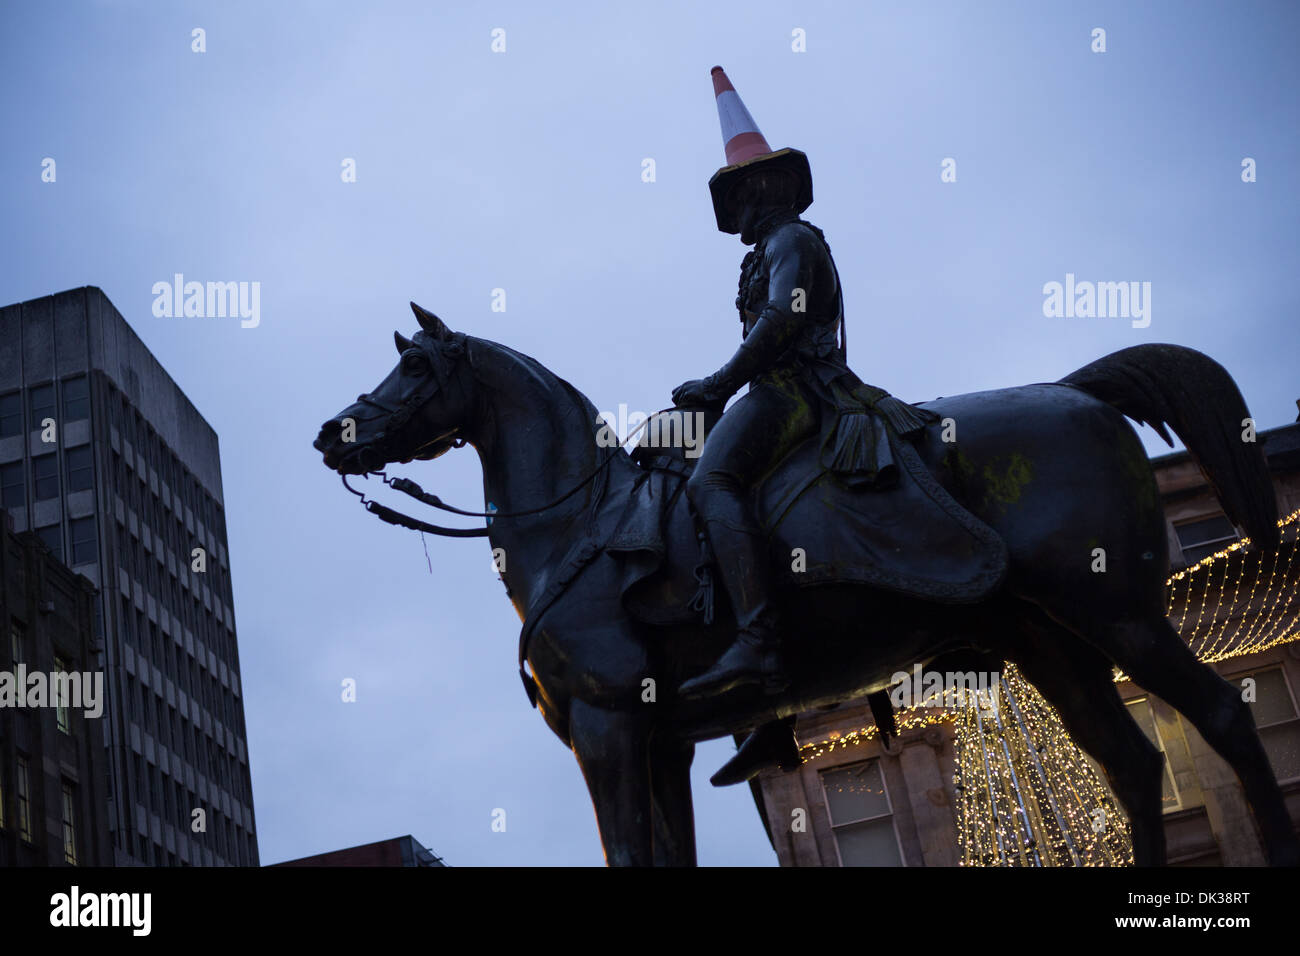 Le duc de Wellington statue qui porte un cône de police sur sa tête, Glasgow, Ecosse. Banque D'Images